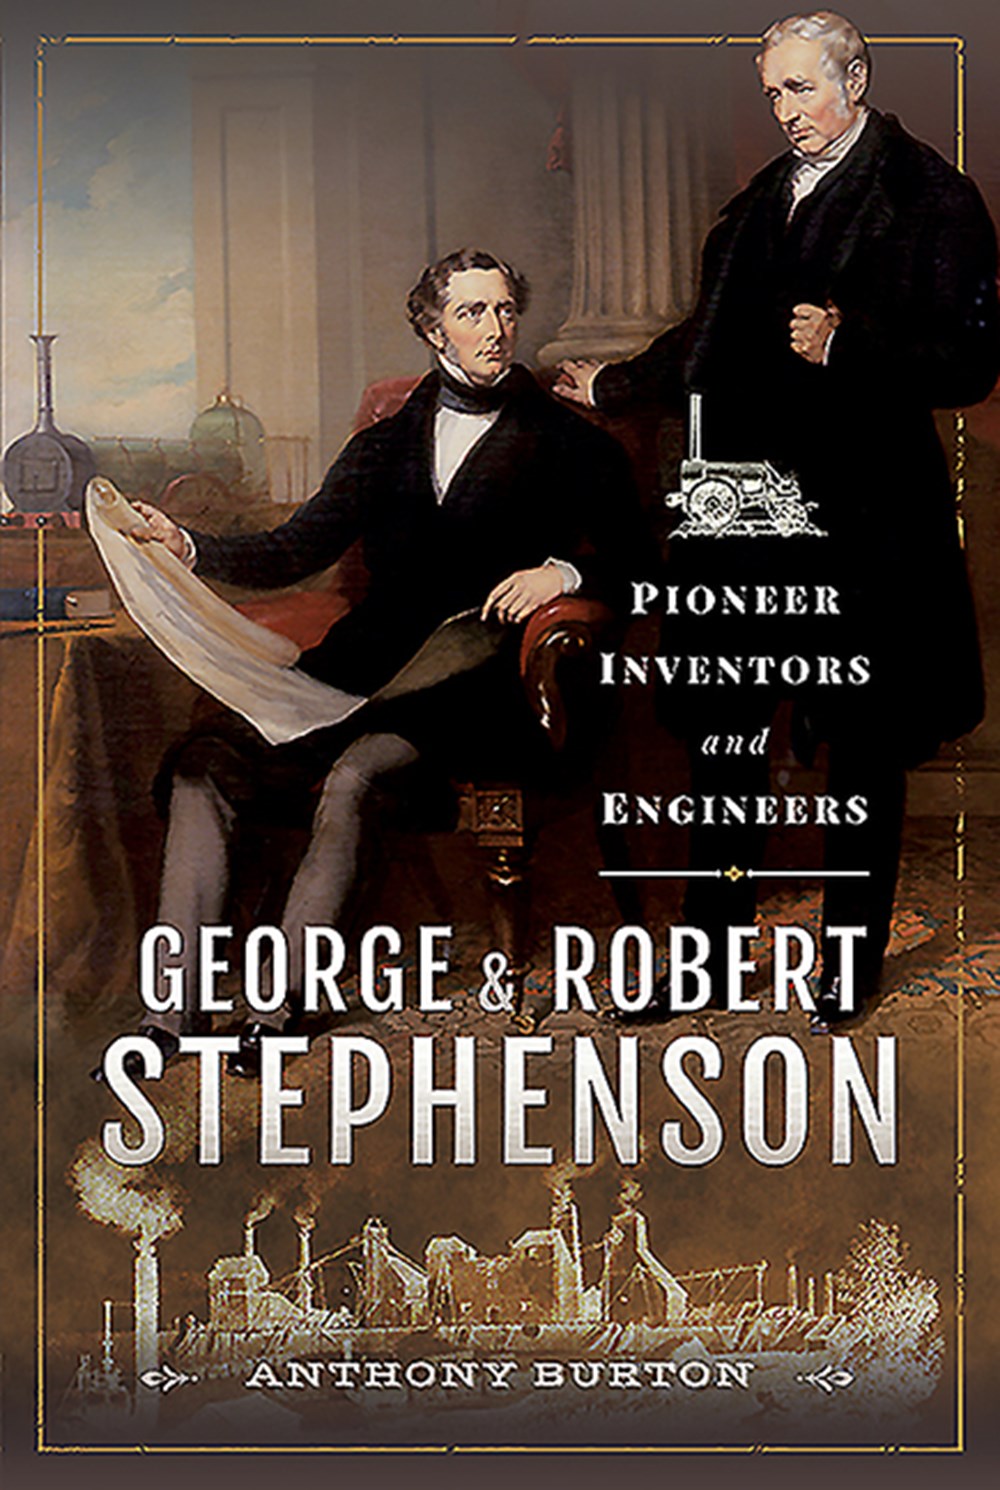 George and Robert Stephenson Pioneer Inventors and Engineers